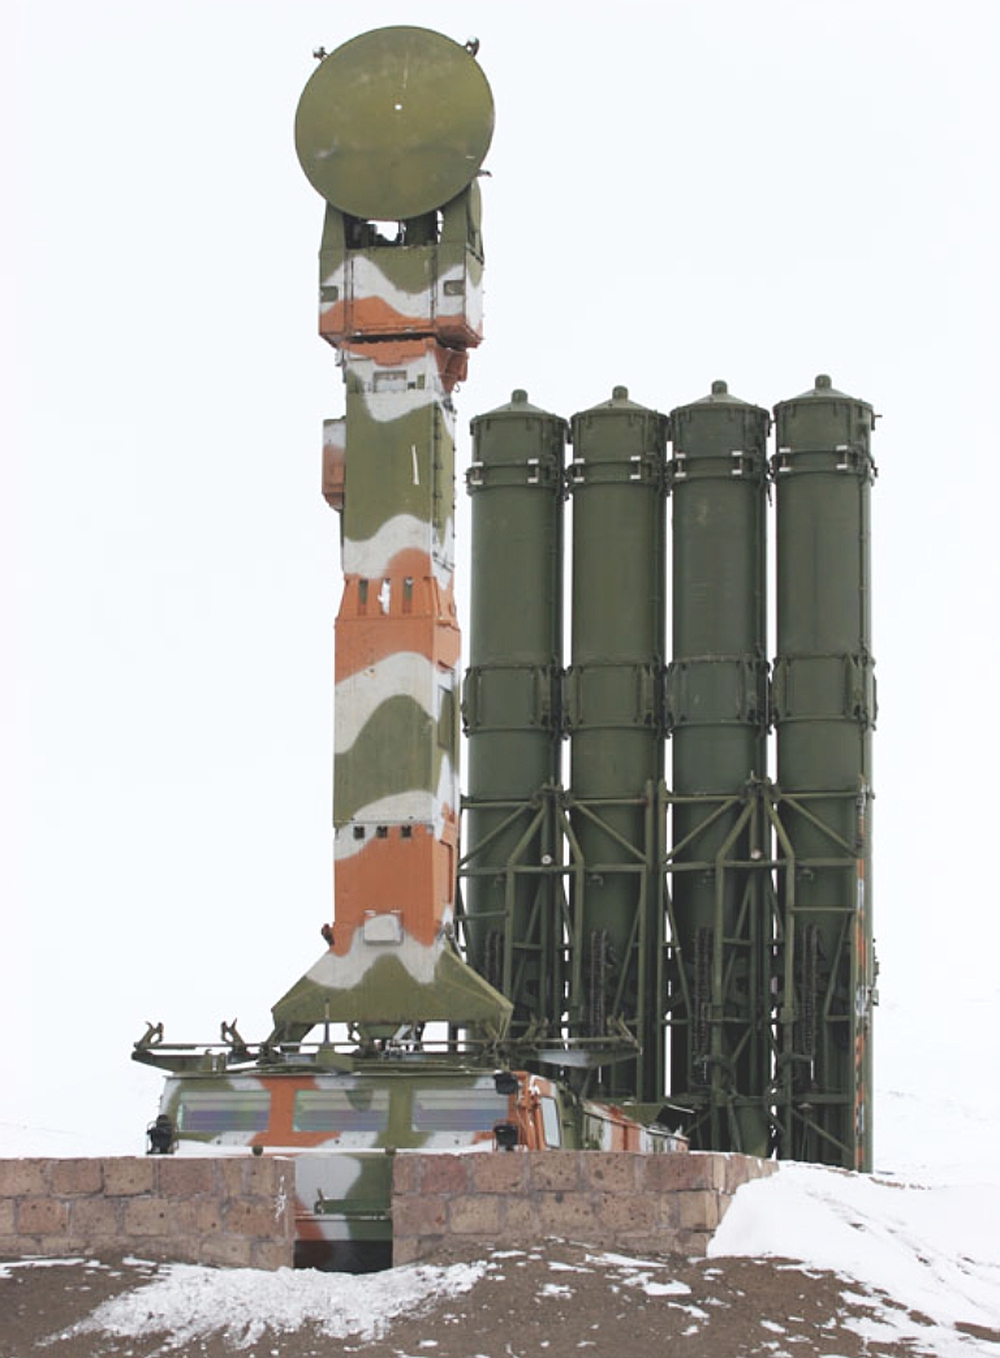 Siêu hệ thống tên lửa Antey-2500: Nguy hiểm bậc nhất thế giới - Ảnh 9.